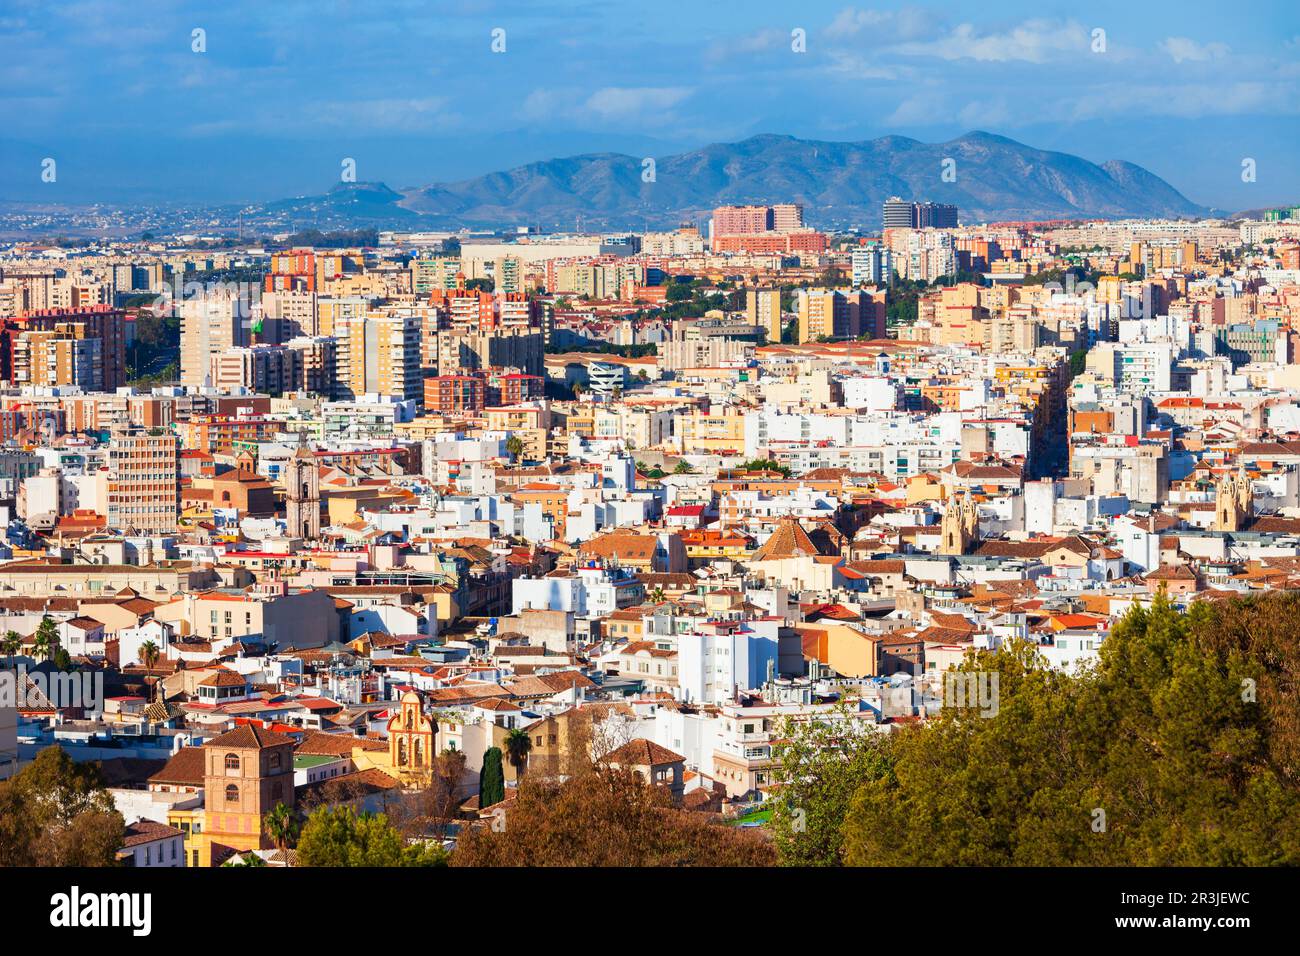 Vista panoramica aerea di Malaga. Malaga è una città della comunità andalusa in Spagna Foto Stock